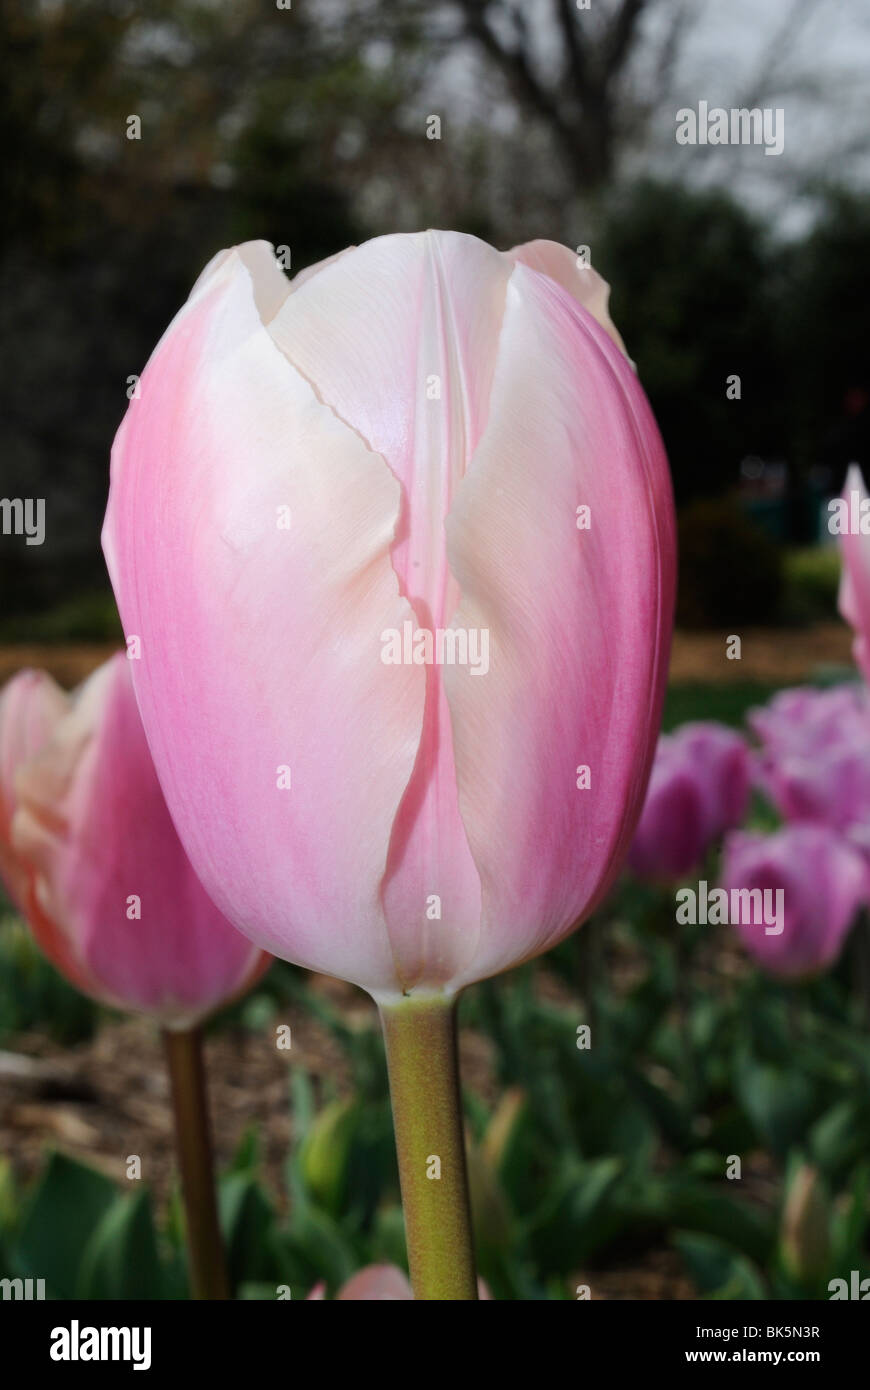 Pink tulip in the Dallas Arboretum Park, Texas Stock Photo